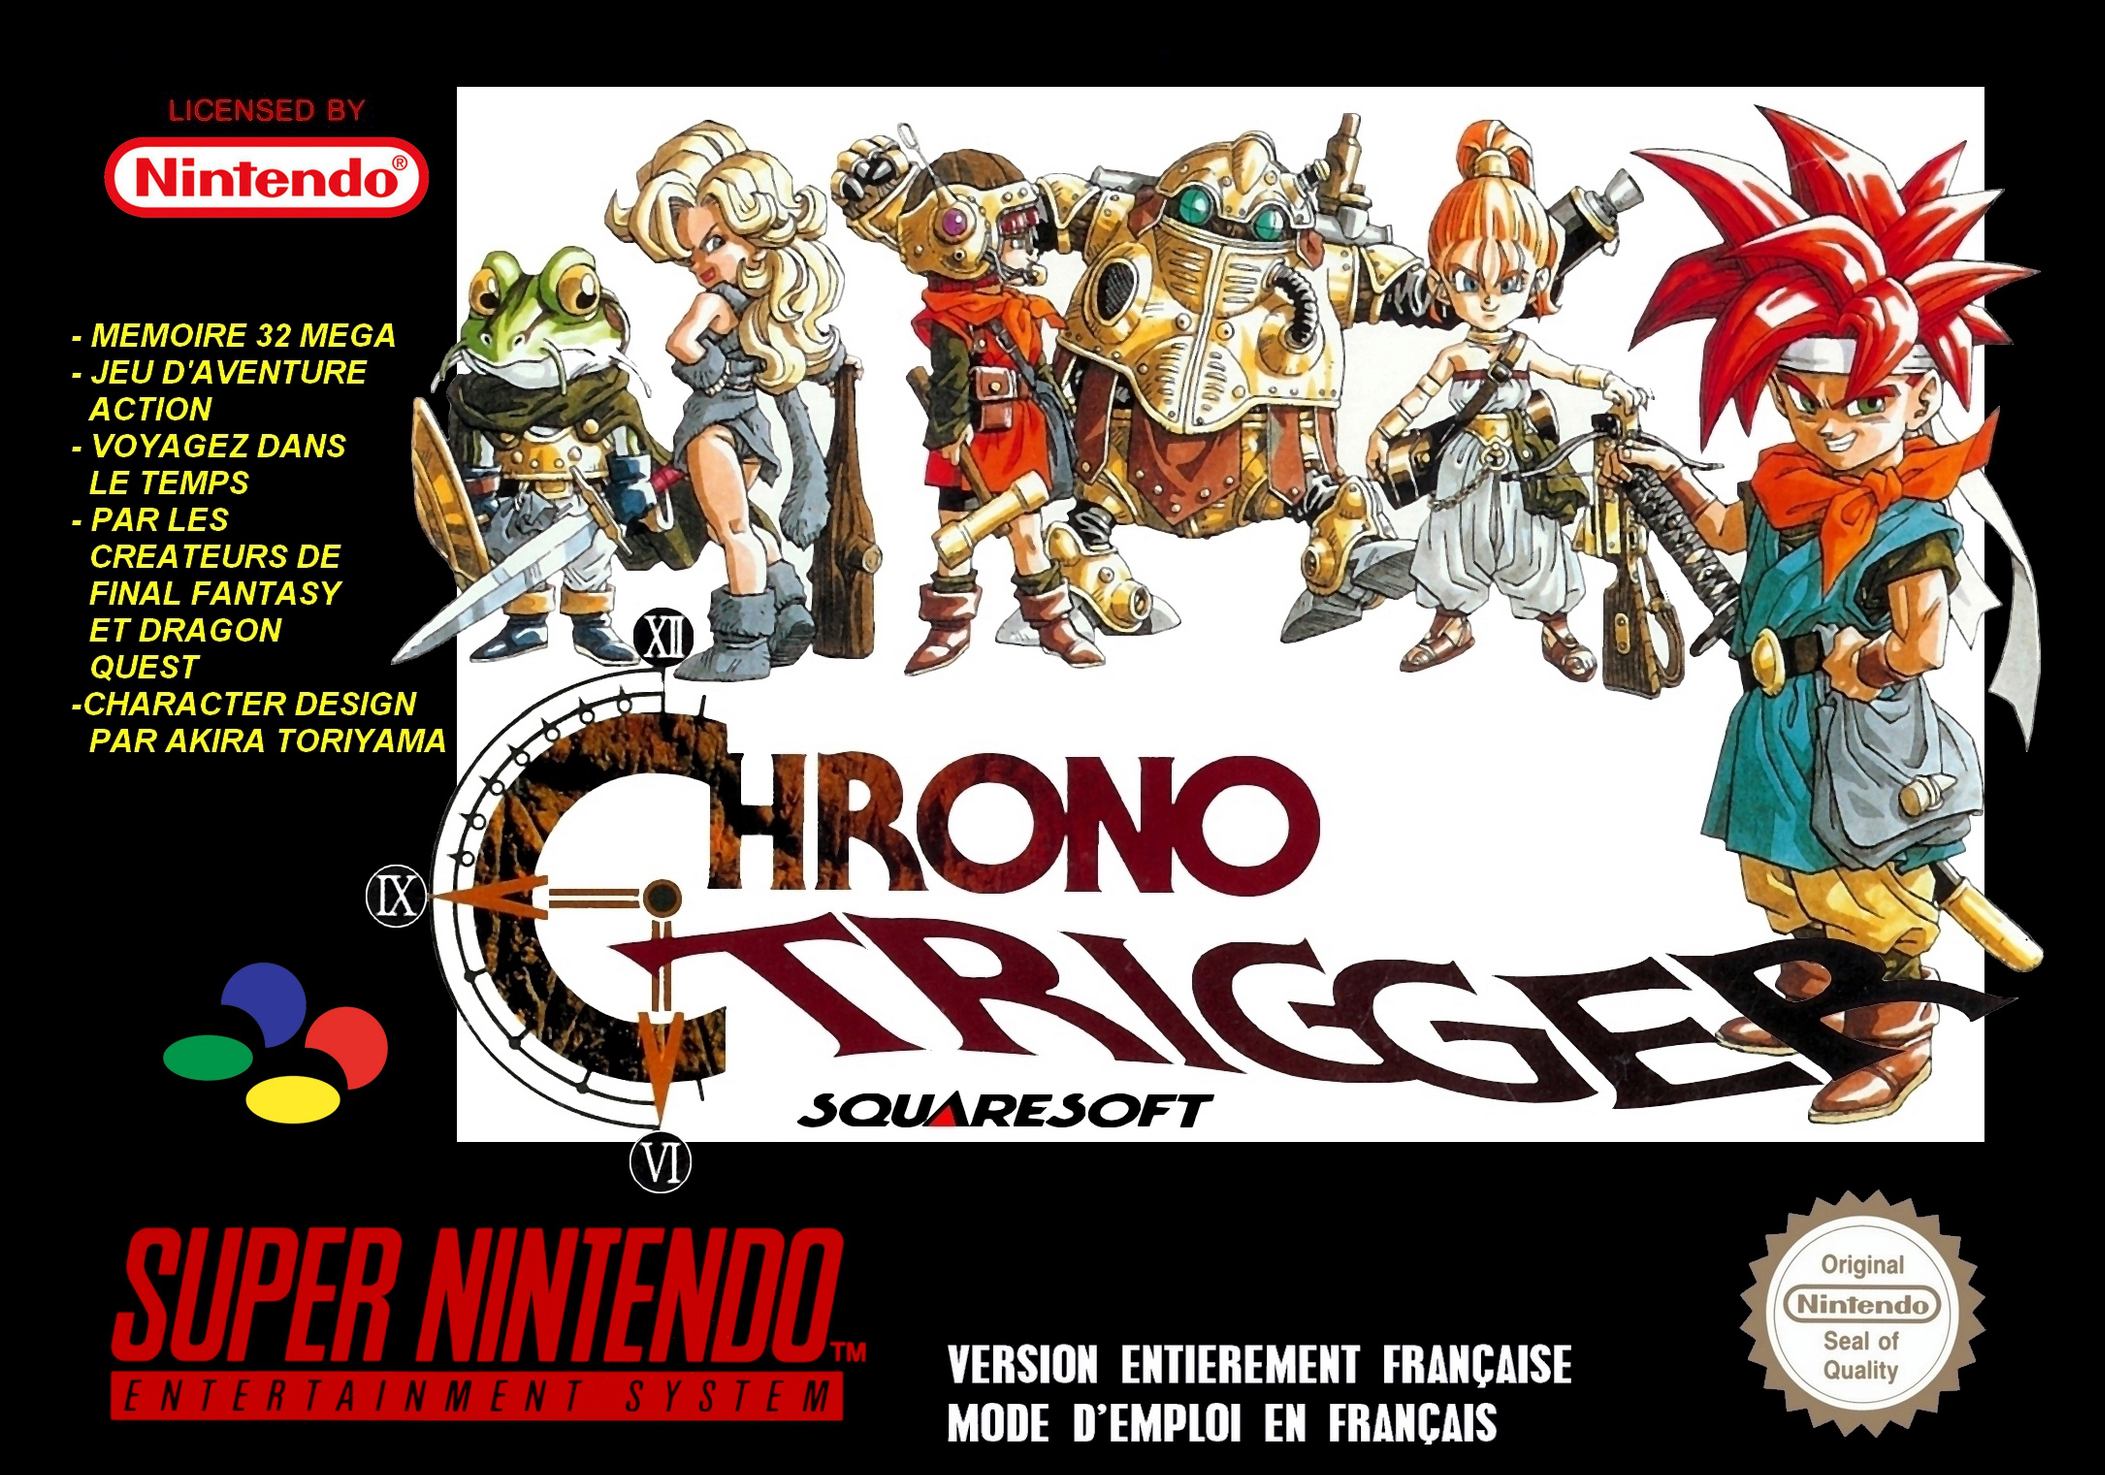 chrono trigger endings in chronological order